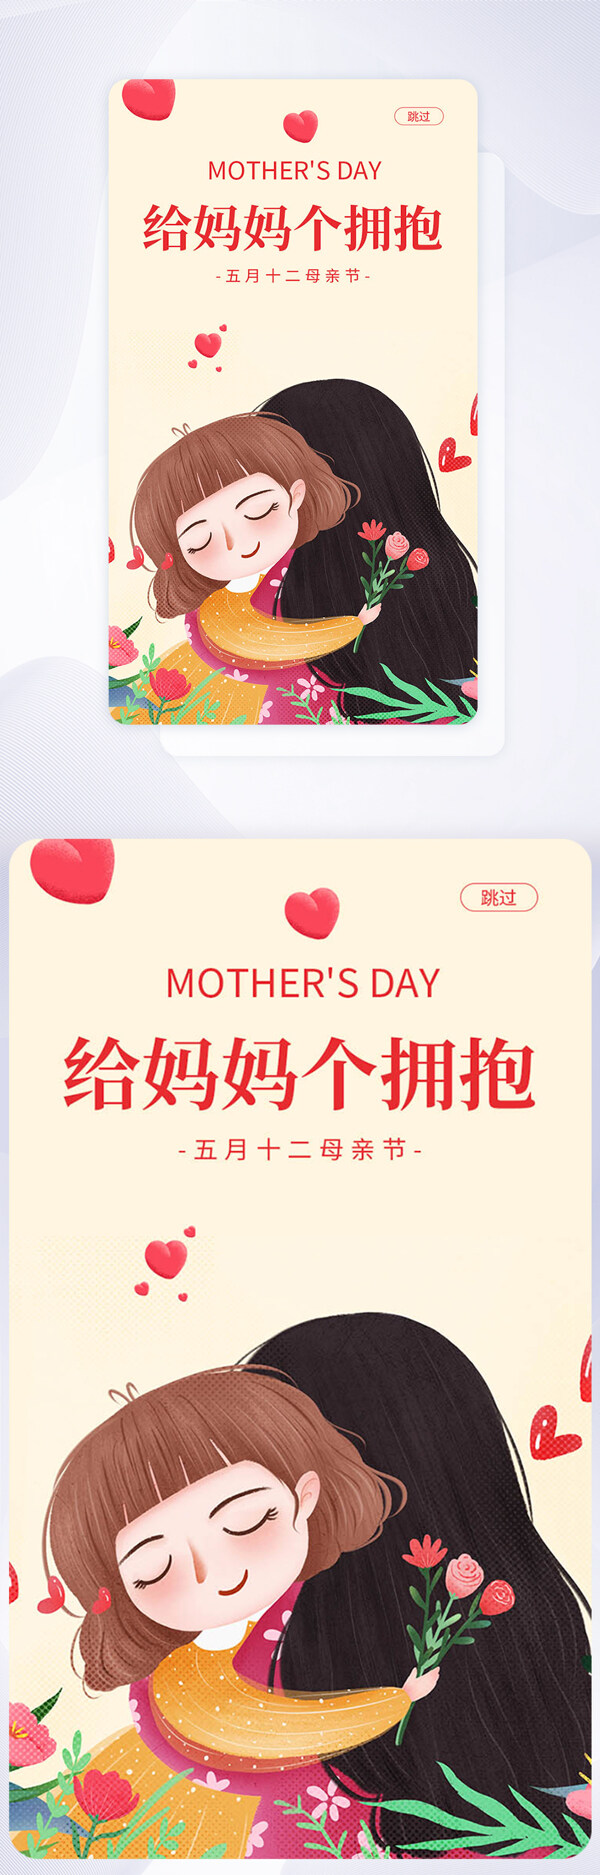 母亲节节日手机APP启动页界面